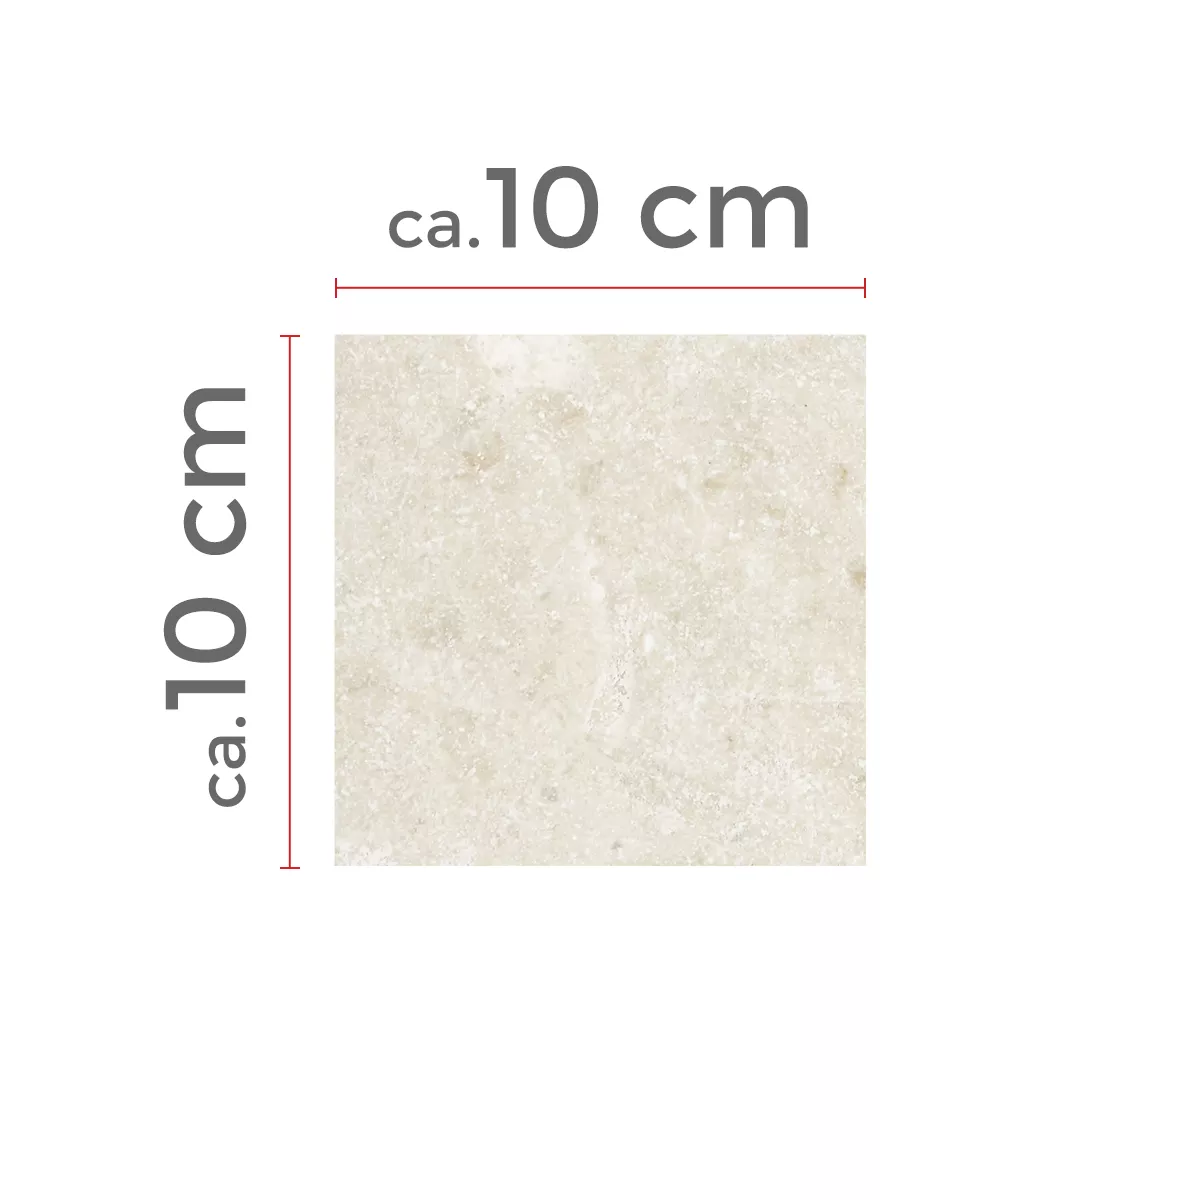 Sample Natursteentegels Marmer Afyon Beige 40,6x61cm